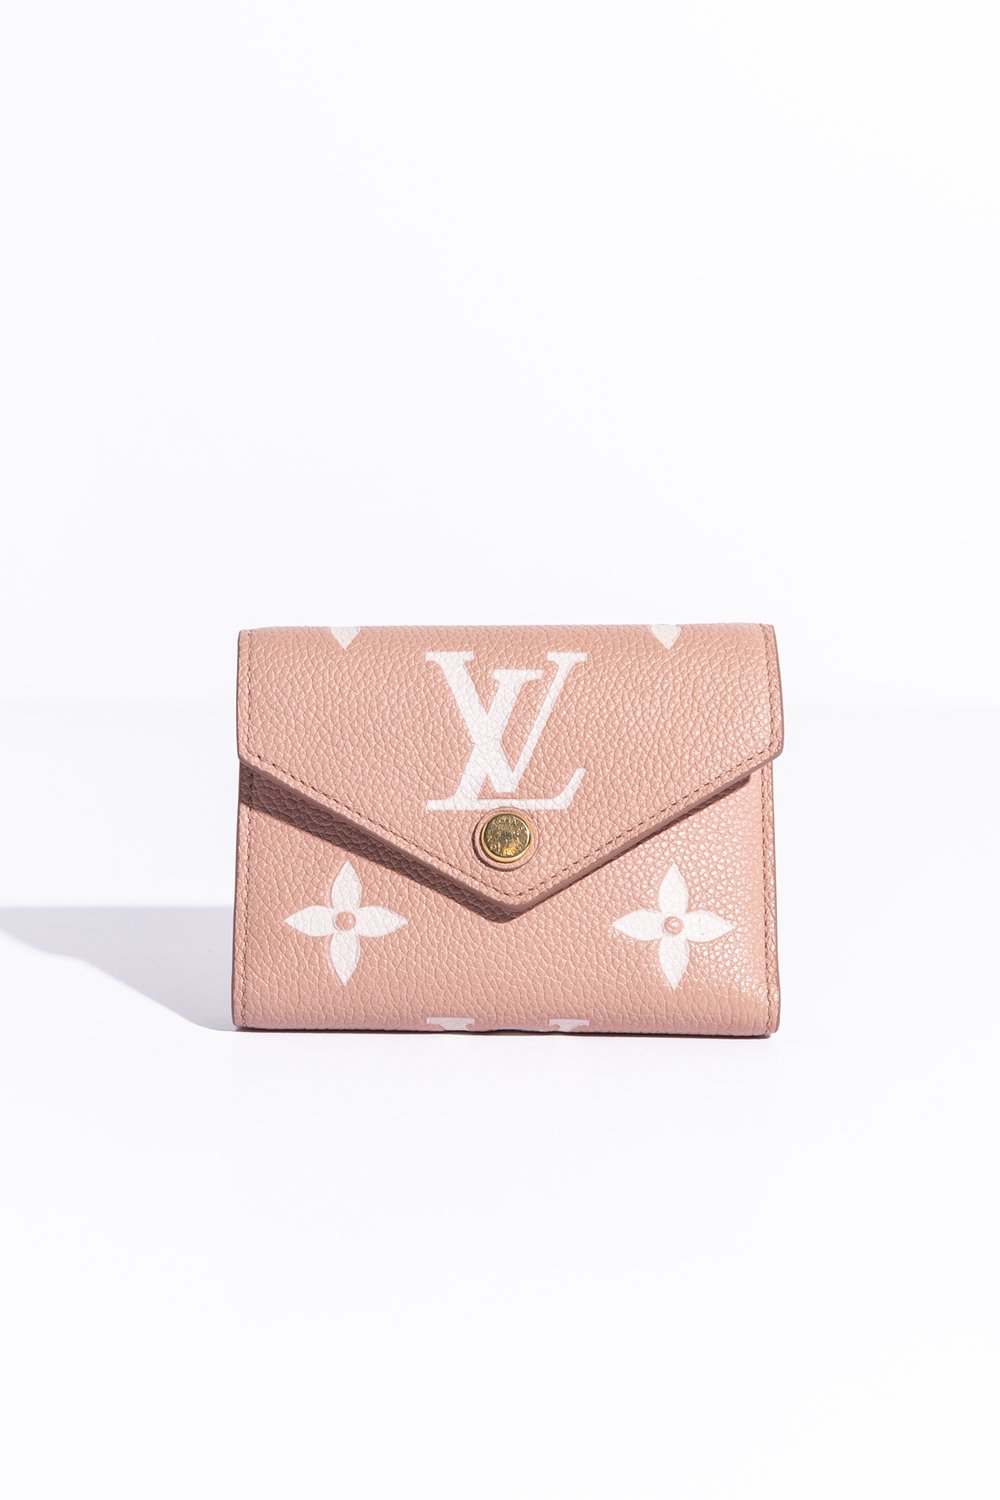 Louis Vuitton - Victorine Wallet - Monogram - Women - Luxury